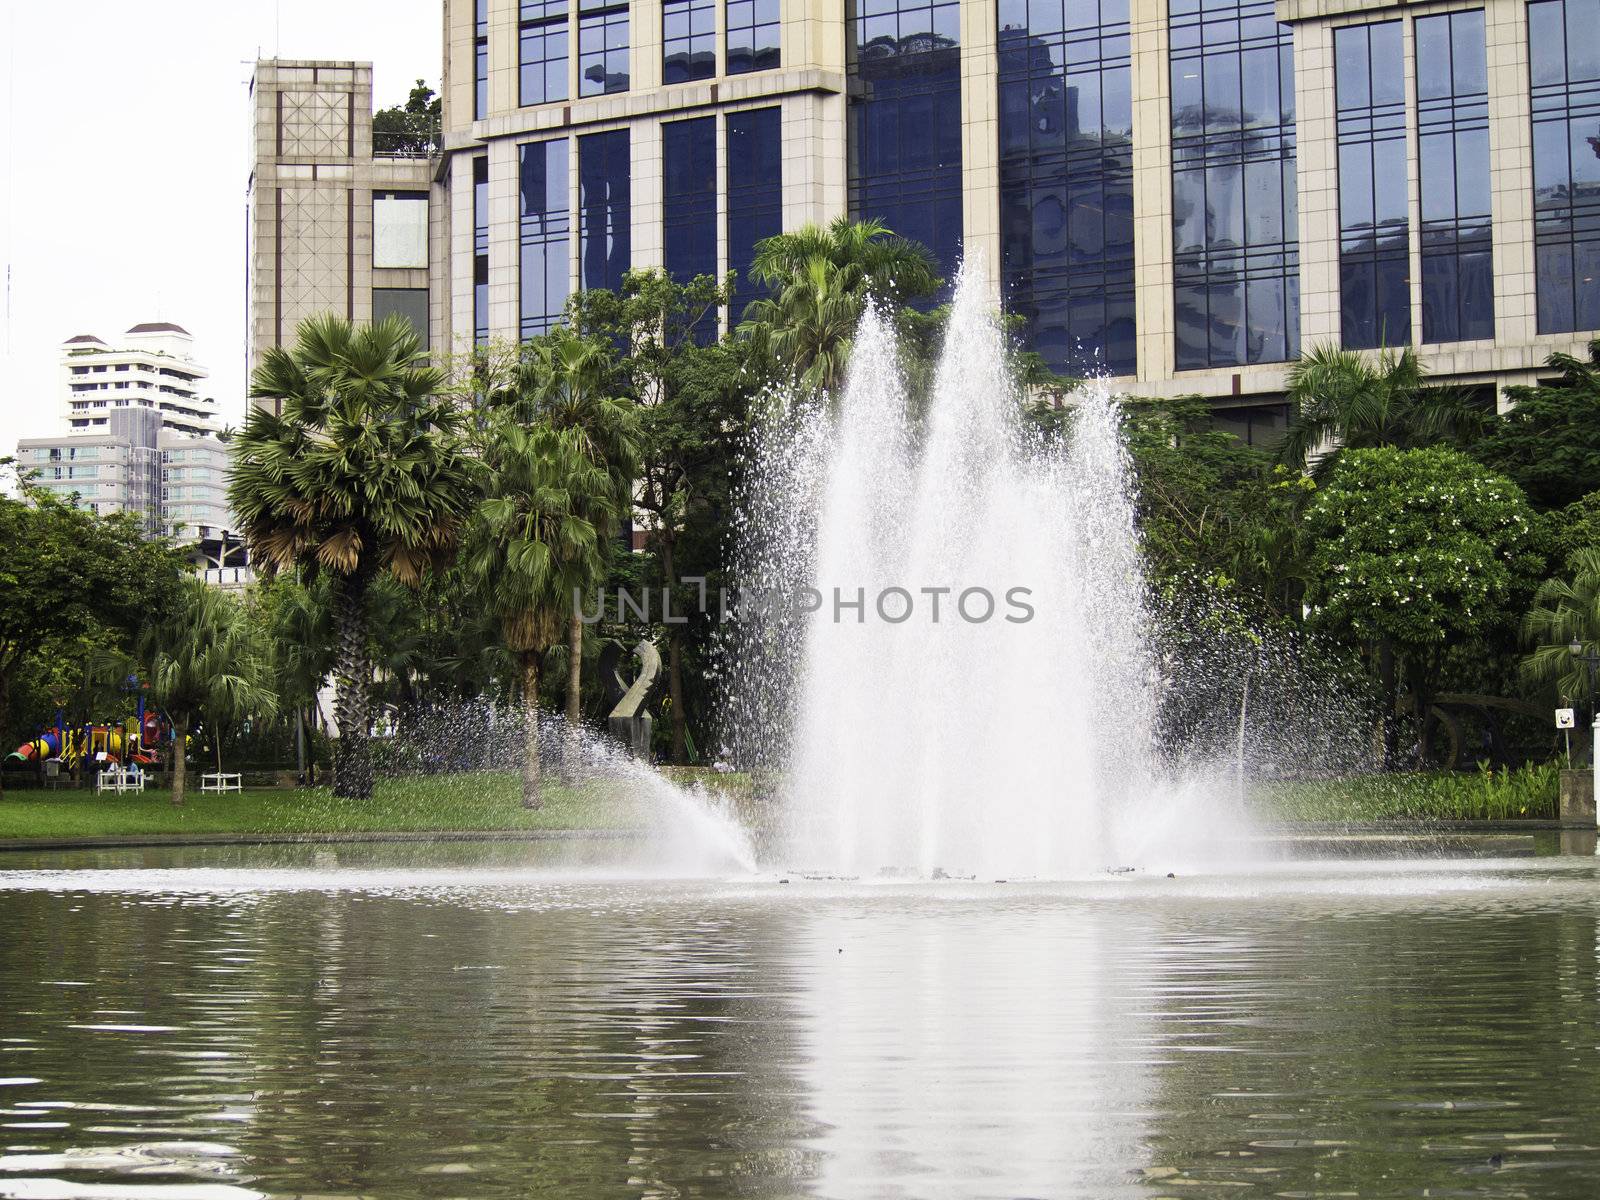 garden with pond and fountain at benjasiri pank, bangkok, thailand